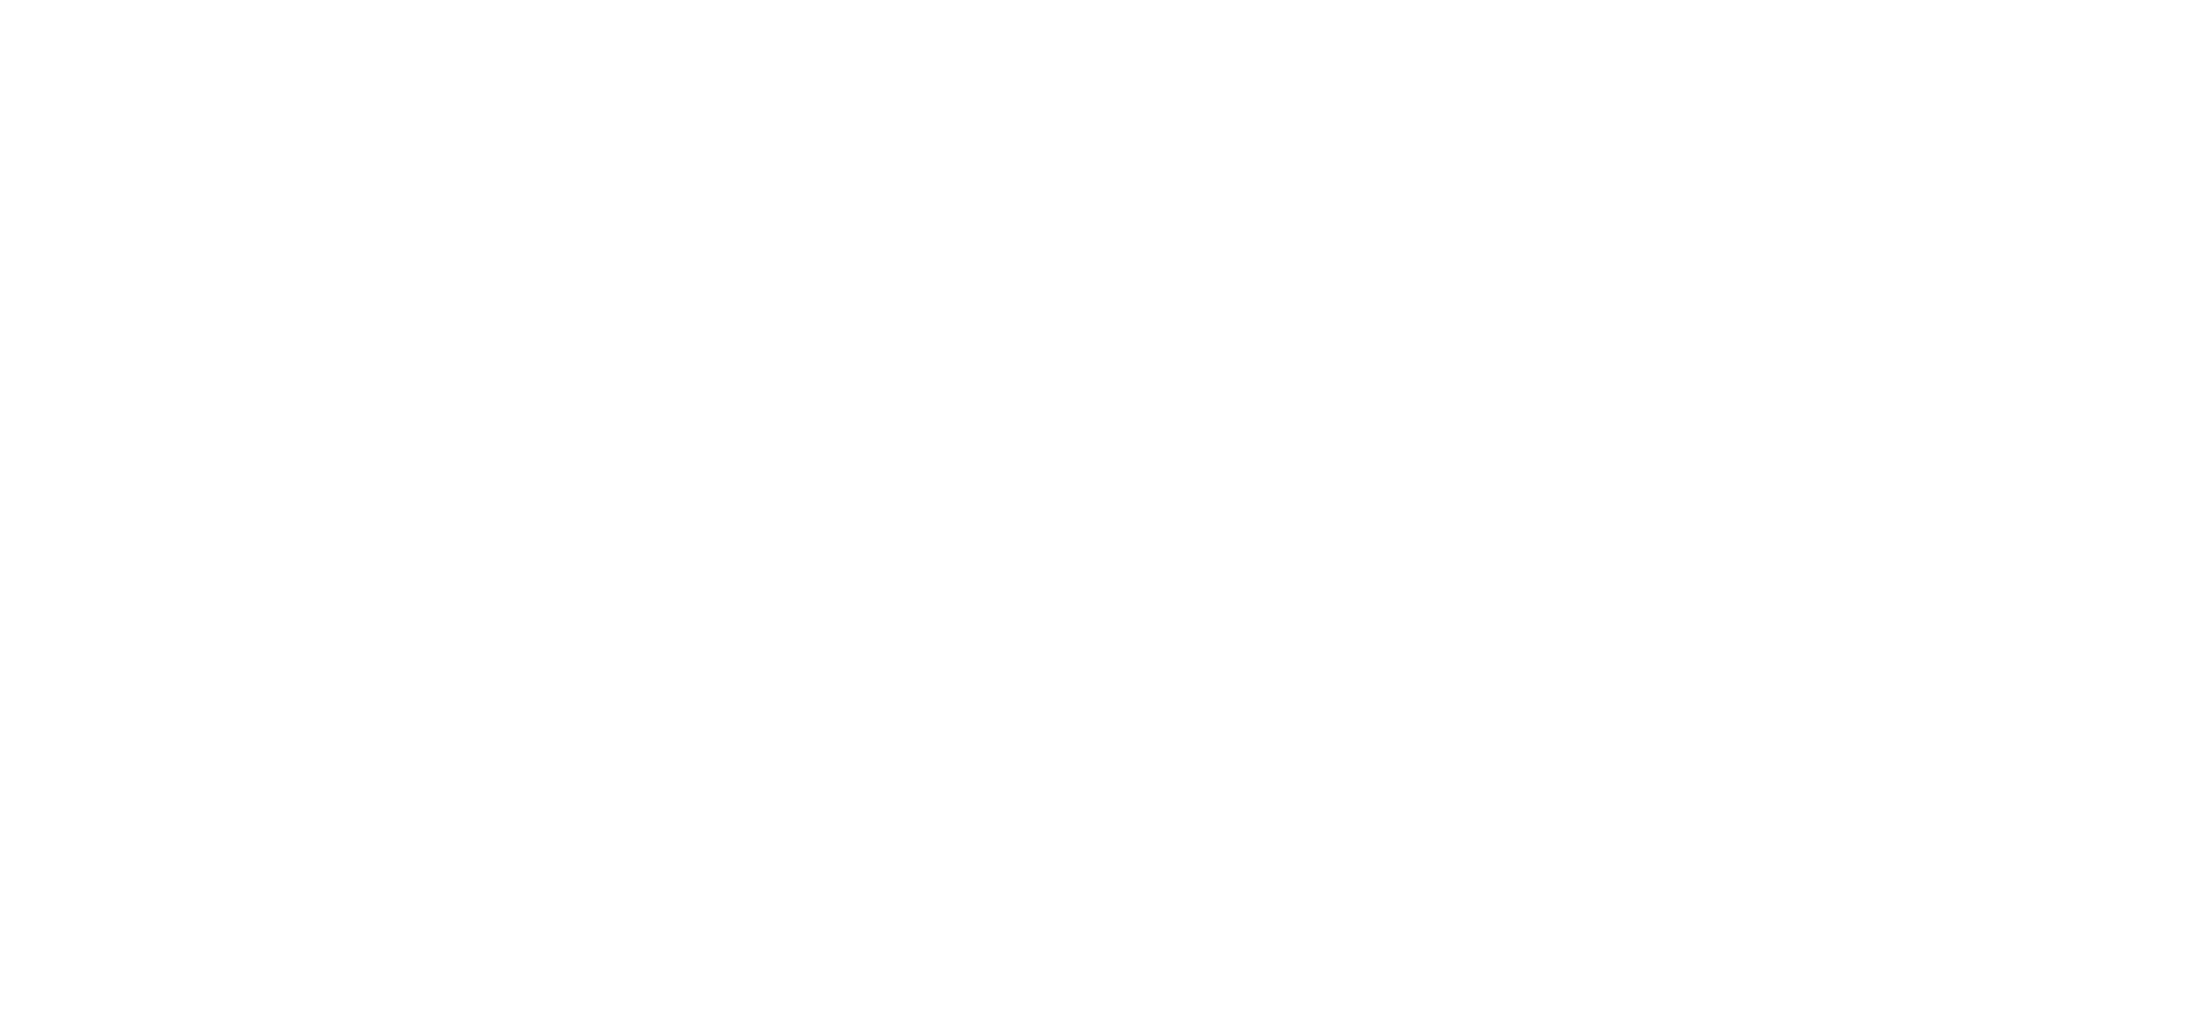 E22 Capital